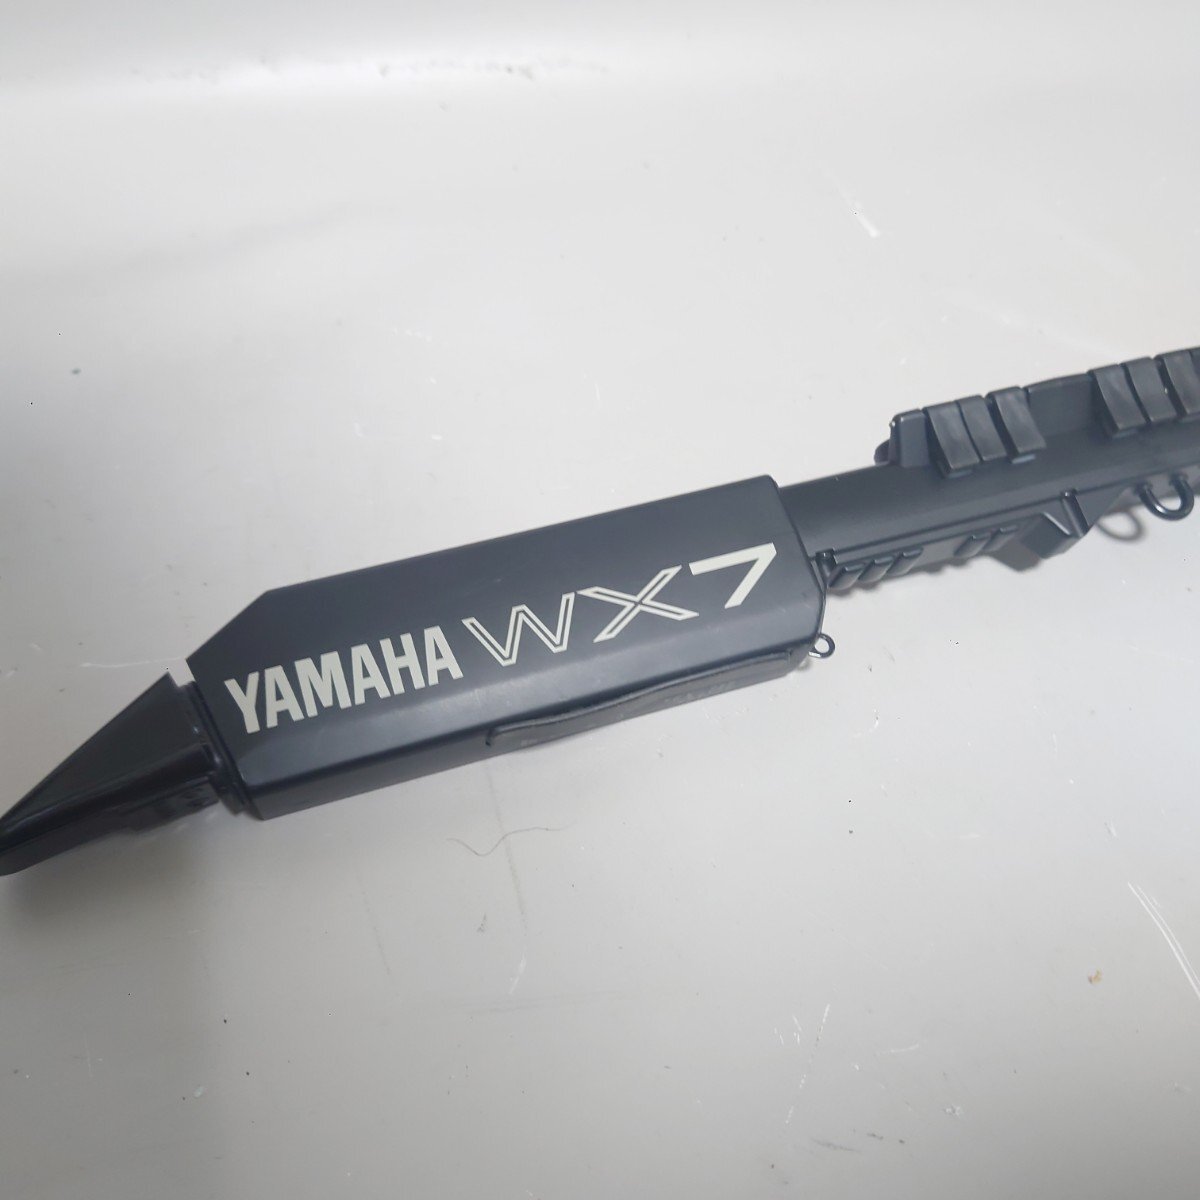 yamaha wx7 Yamaha WX7 Wind MIDI контроллер синтезатор черный рабочий товар бесплатная доставка *